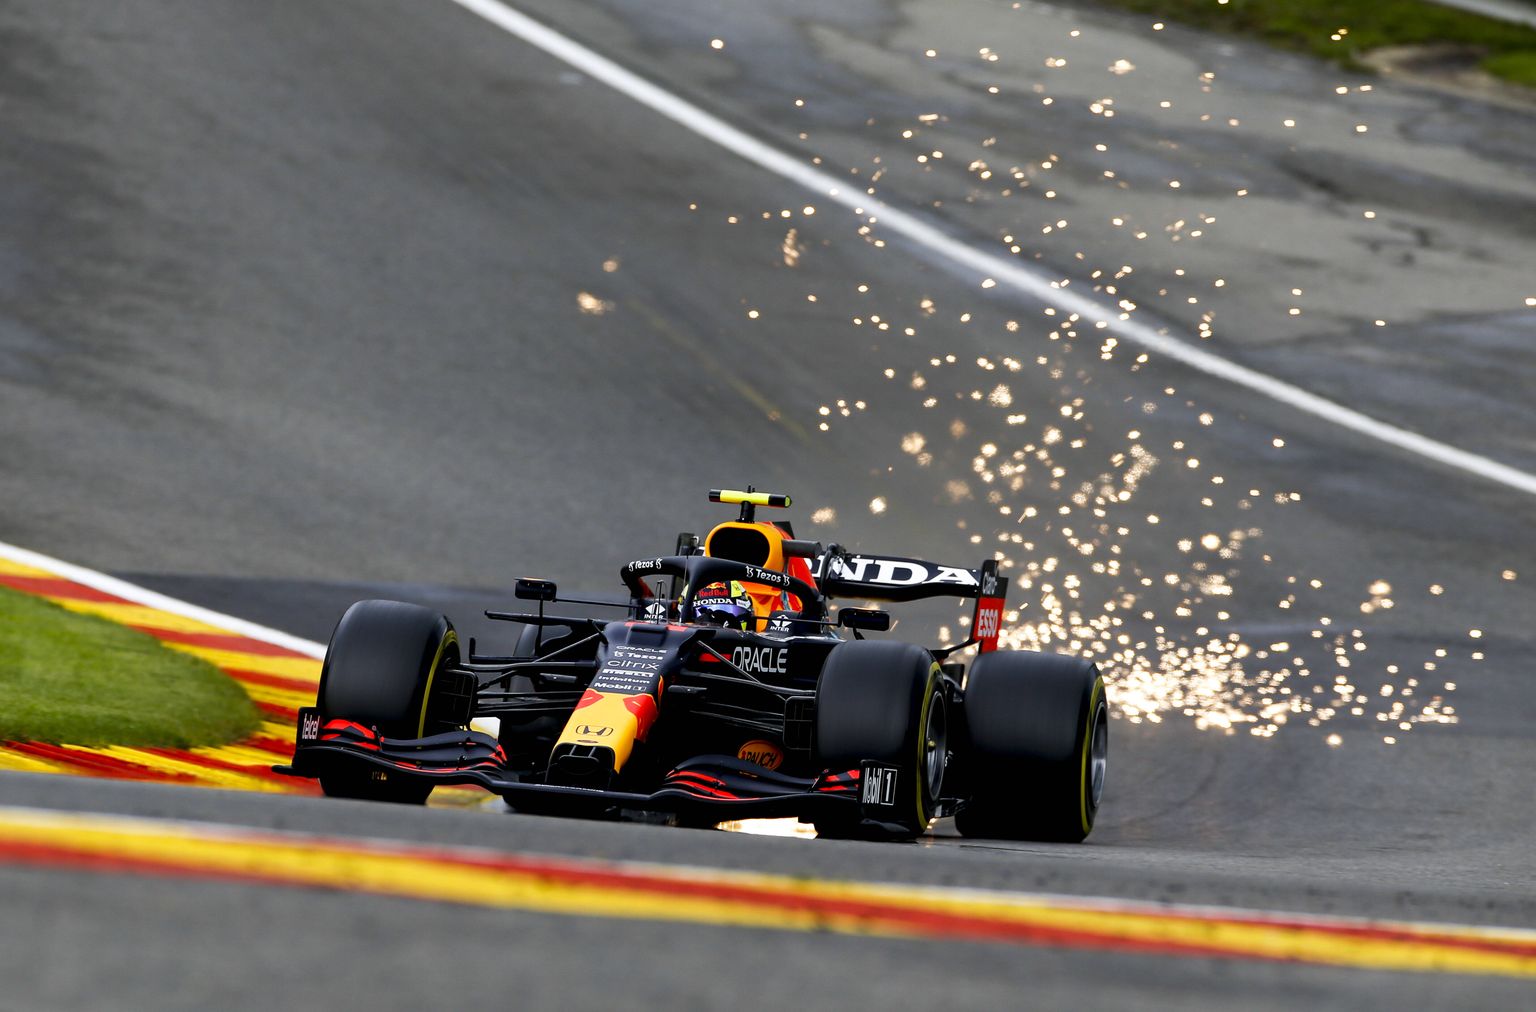 Vormel pritsis sädemeid, sest põhi põrkas vastu rada. Sergio Perezi juhitav Red Bulli vormel Spa ringrajal.